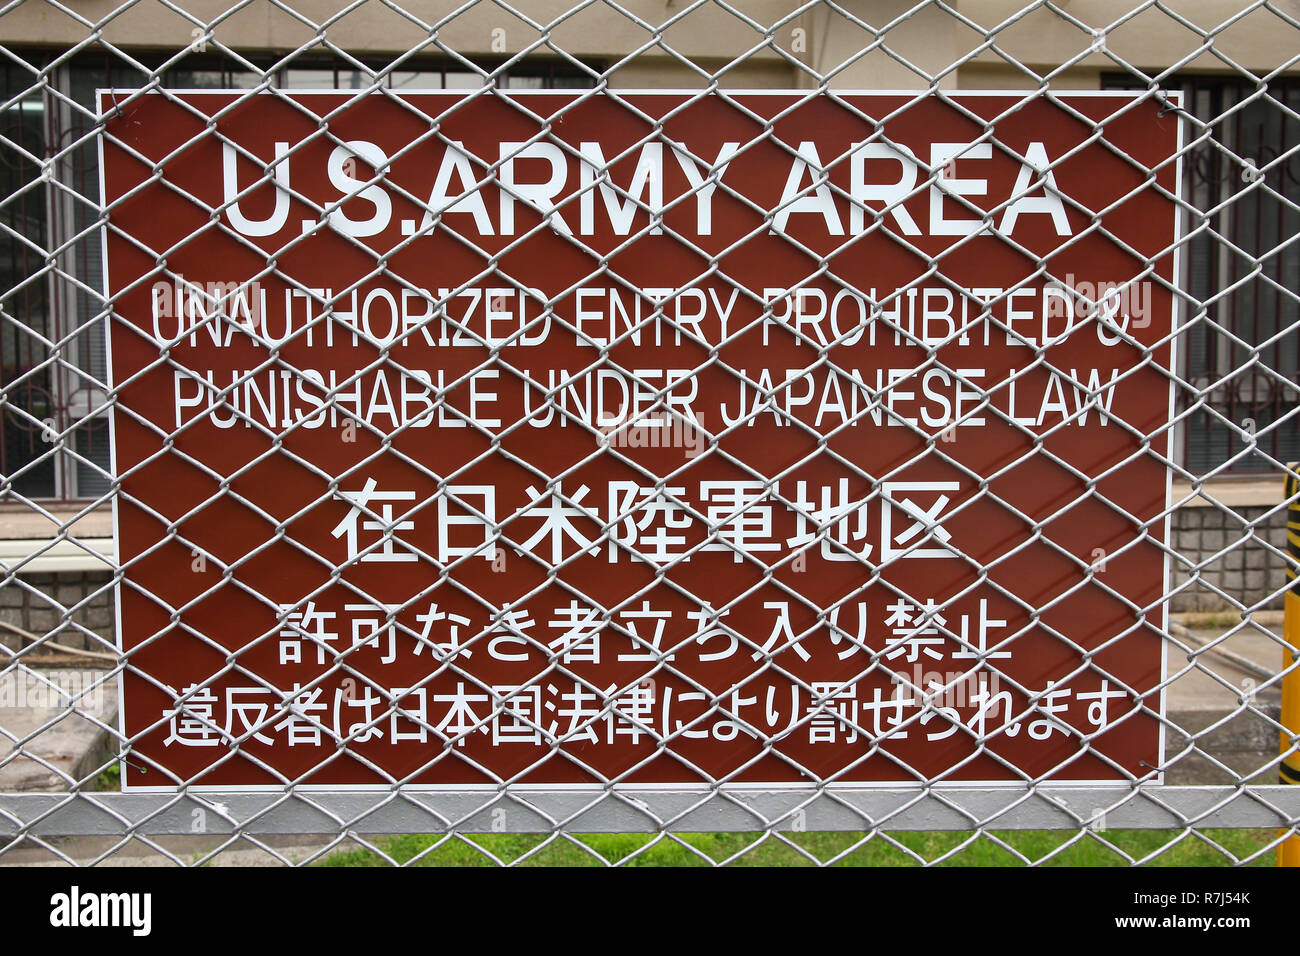 US Army base militare in Tokyo, Giappone - Nessun segno sconfinamenti su una recinzione in acciaio Foto Stock